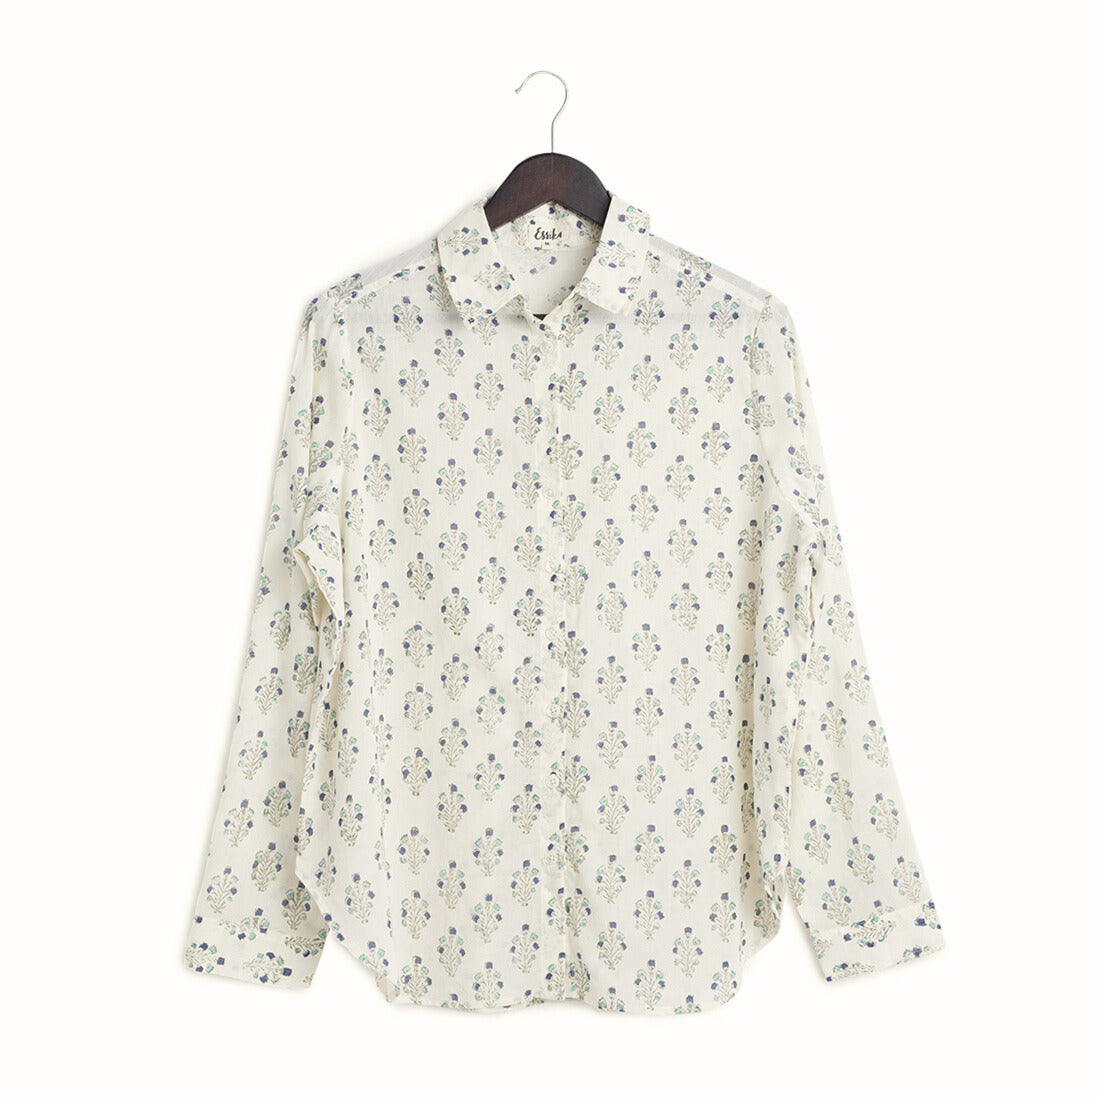 Cotton Regular Full Sleeves Teal & Indigo Block Print Shirt - Front Image